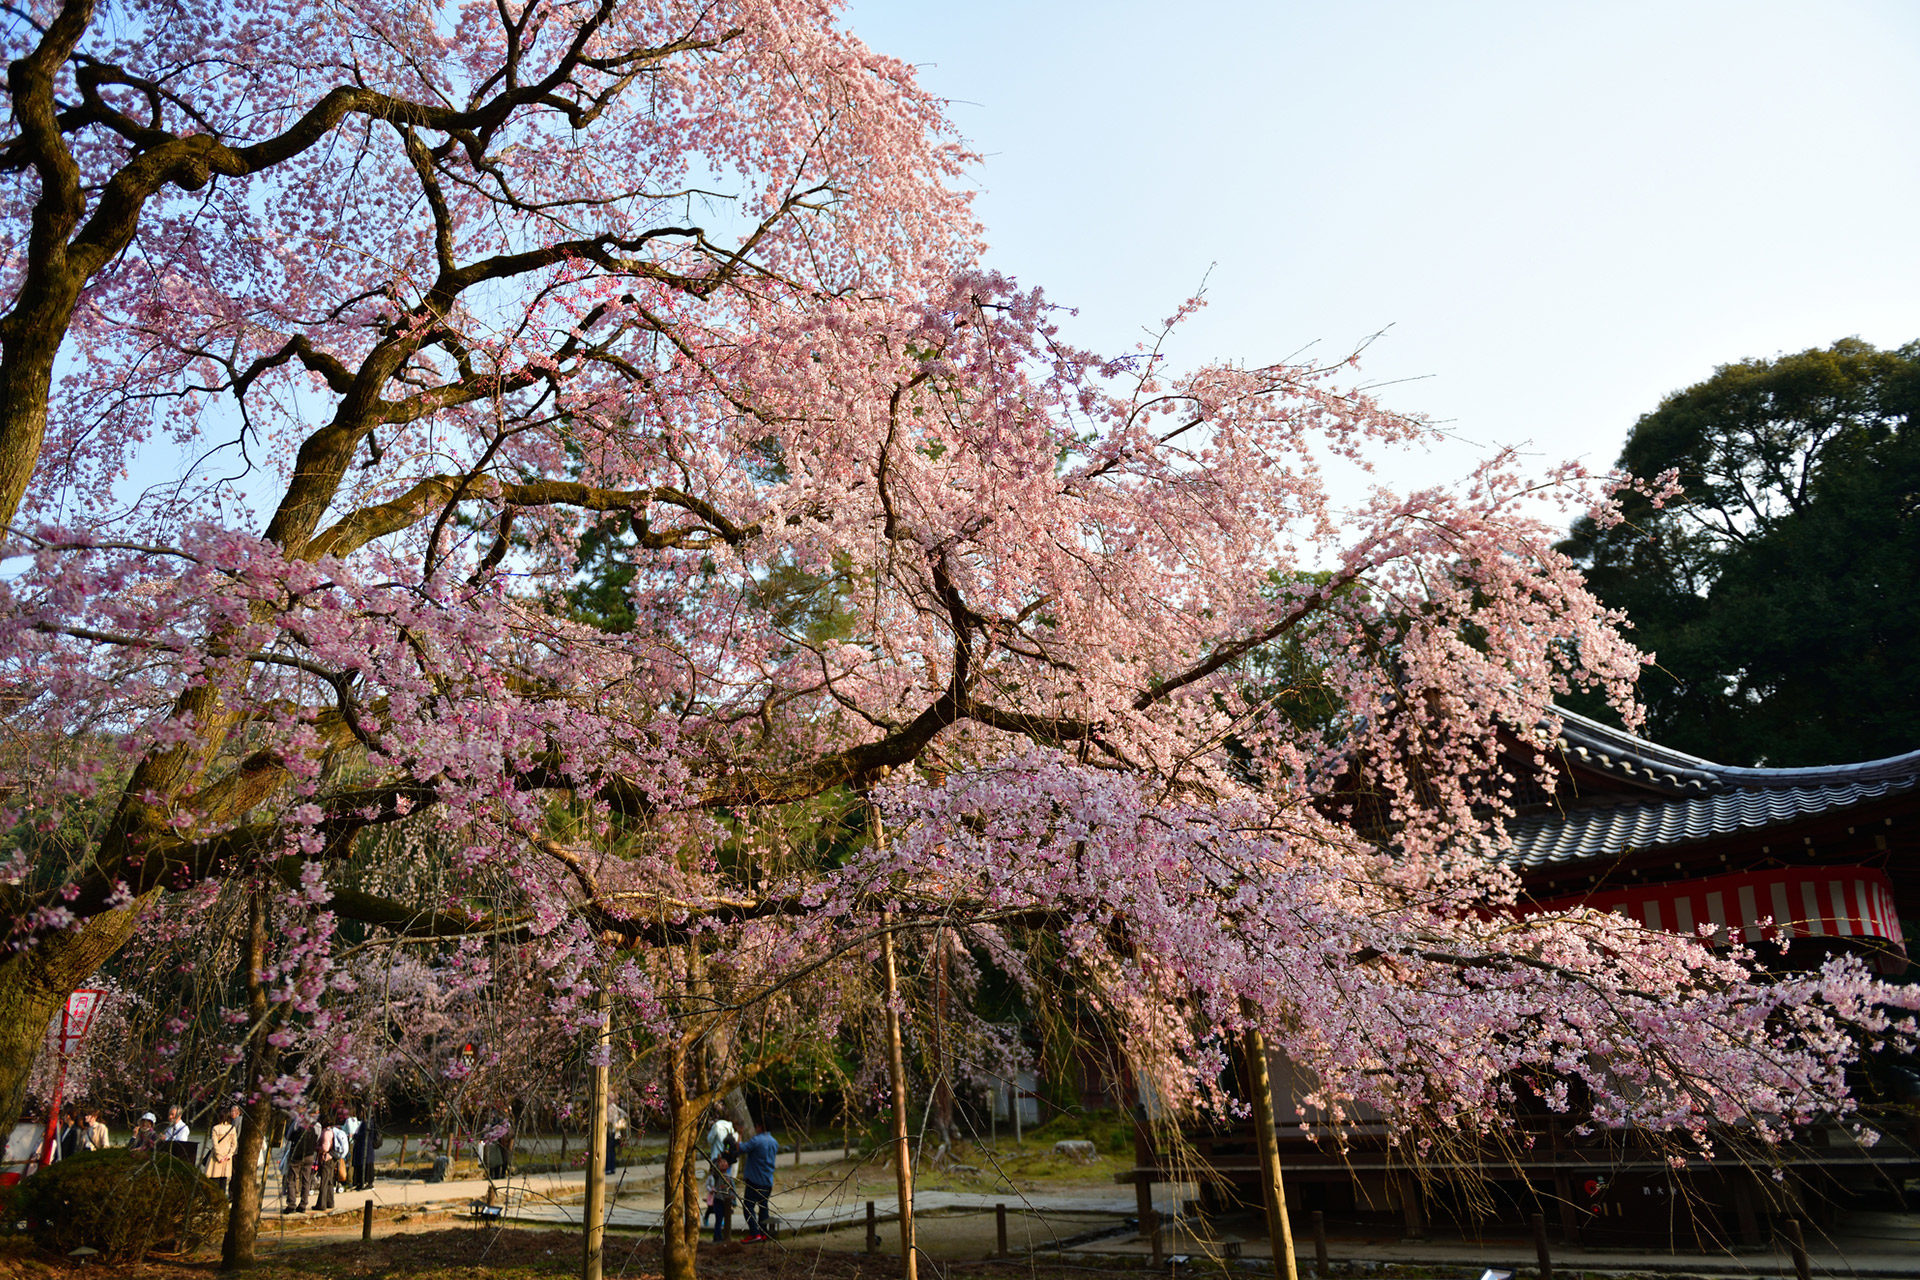 醍醐寺-桜-イメージ